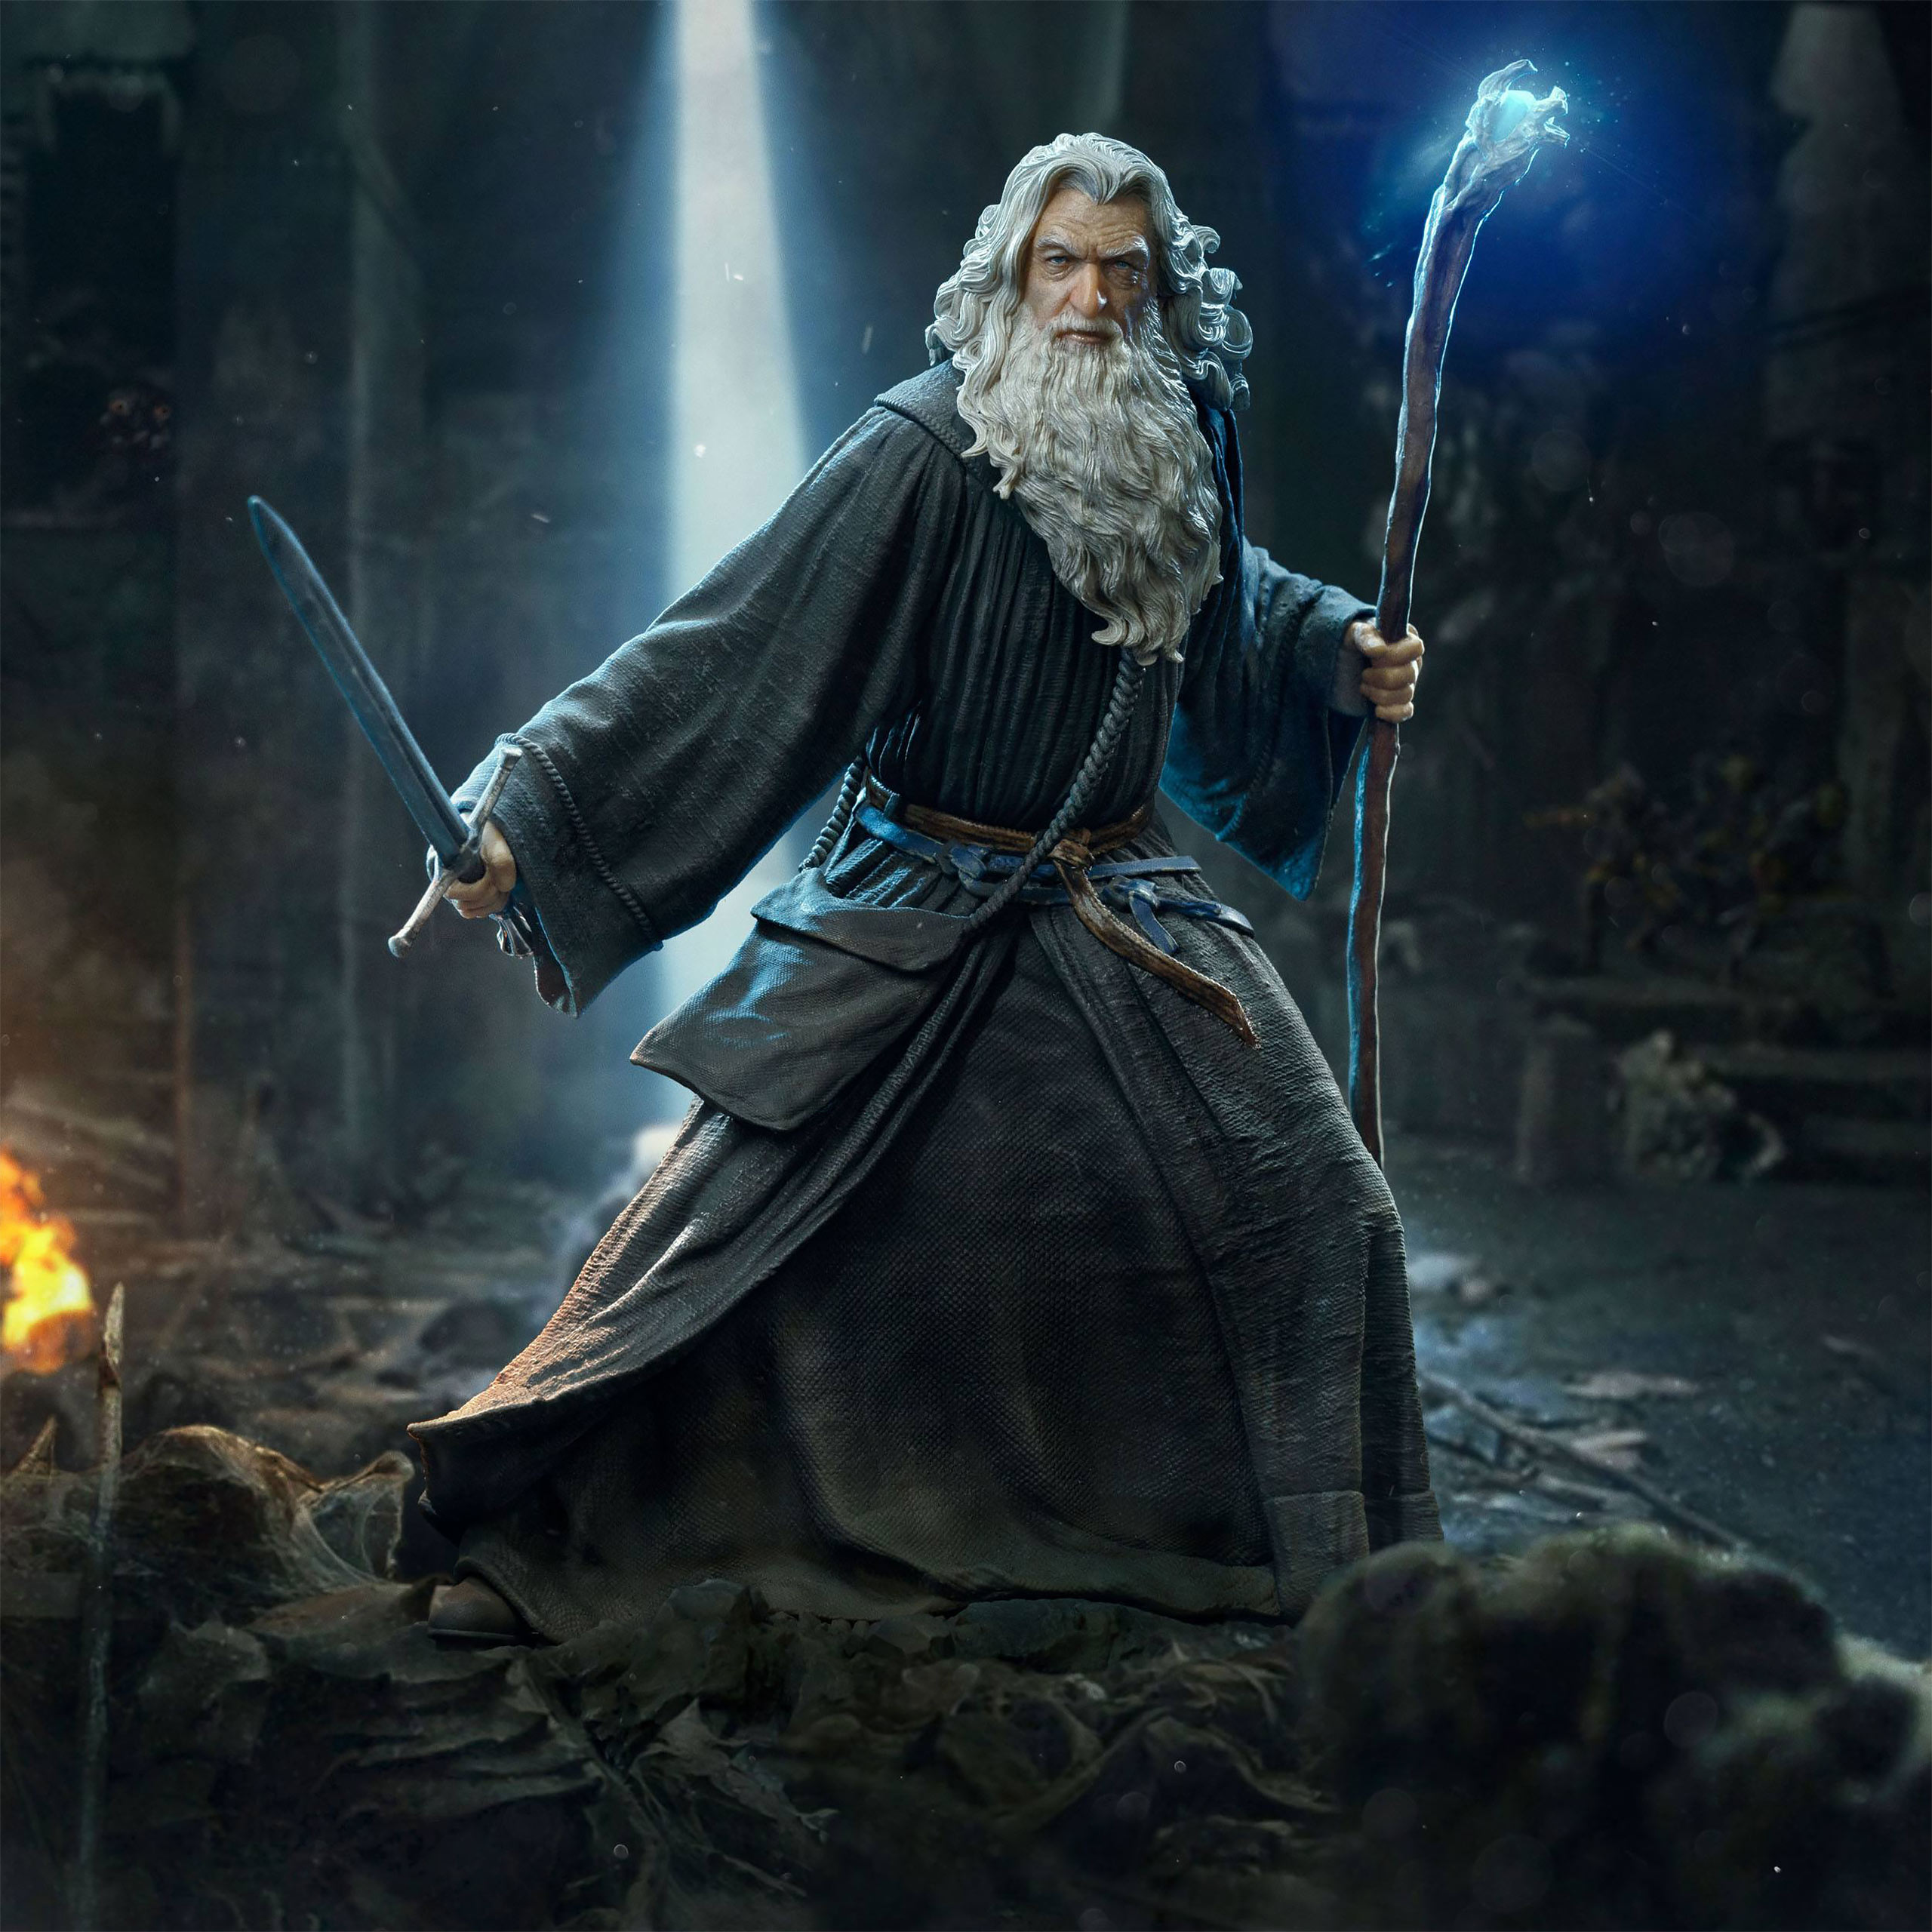 Seigneur des Anneaux - Gandalf BDS Art Scale Deluxe Statue 1:10